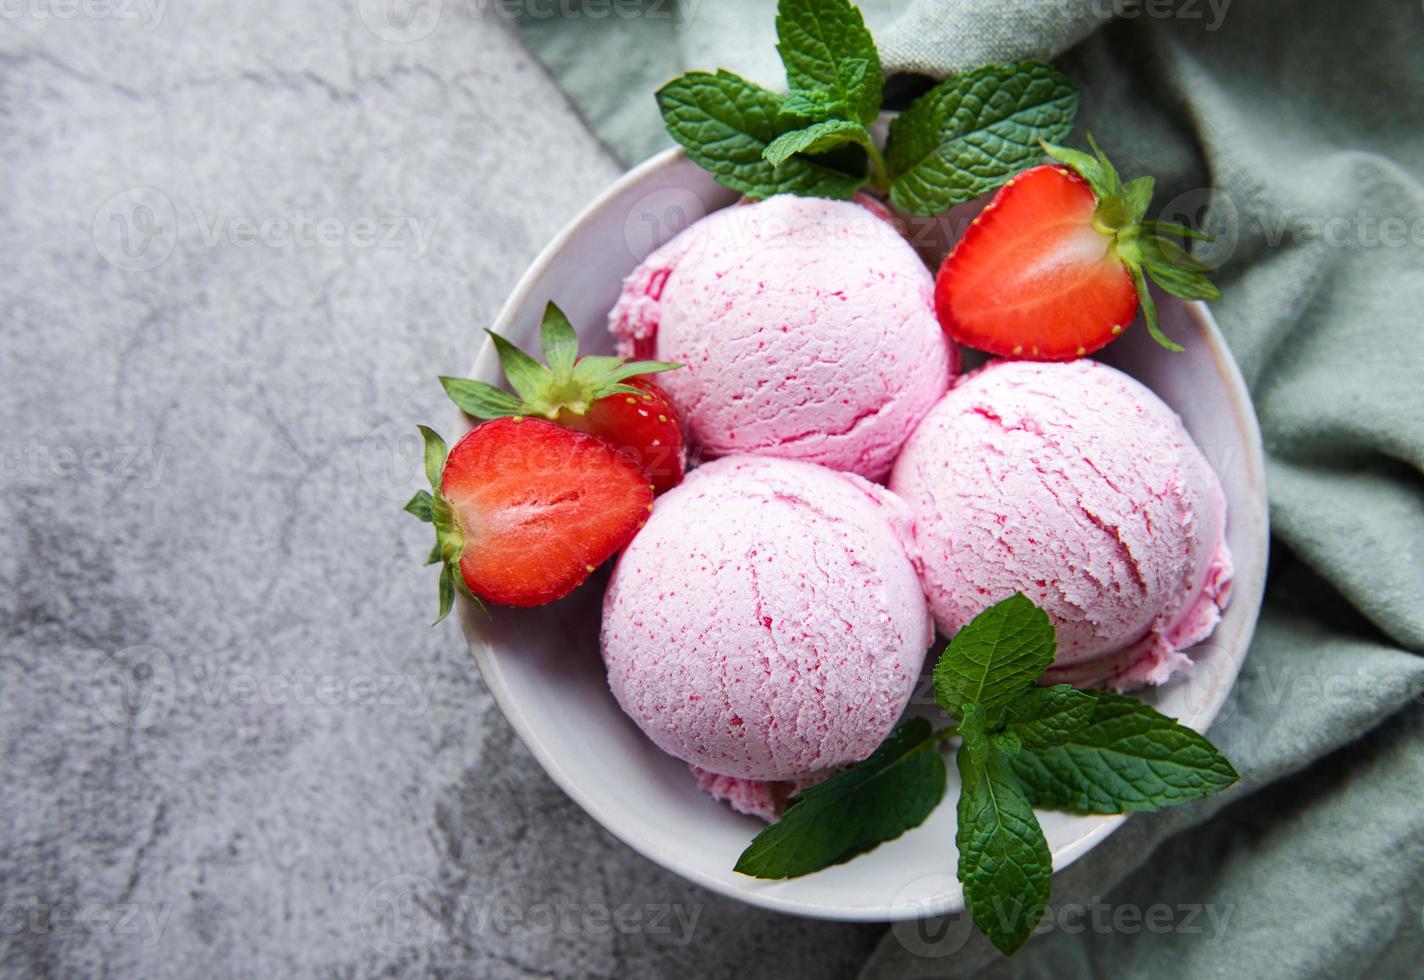 helado de fresa casero con fresas frescas foto